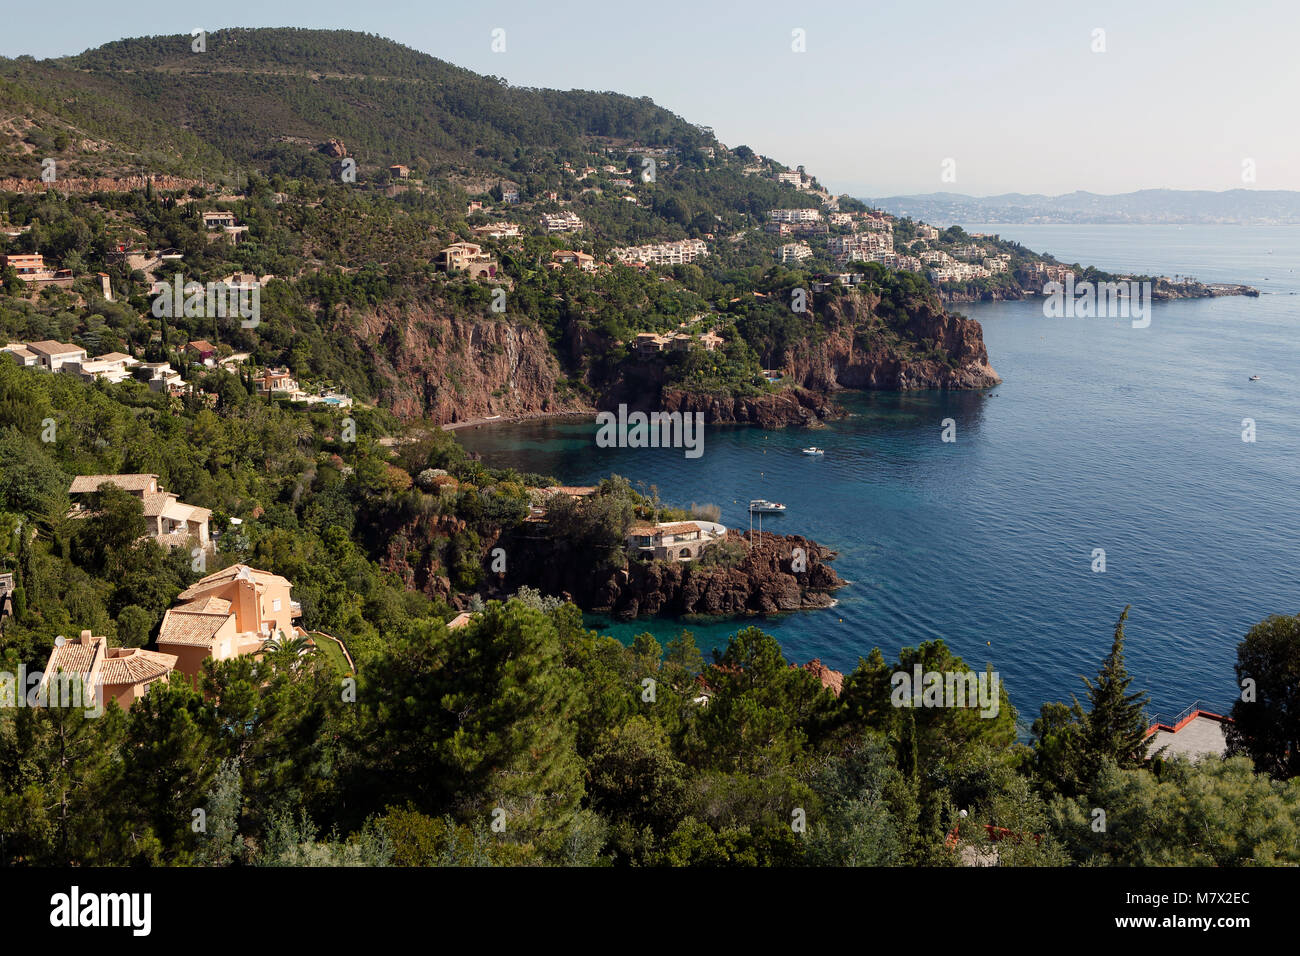 Die französische Riviera, auch bekannt als die Cote d'Azur (Cote d'Azur),Frankreich, Europa Stock Photo